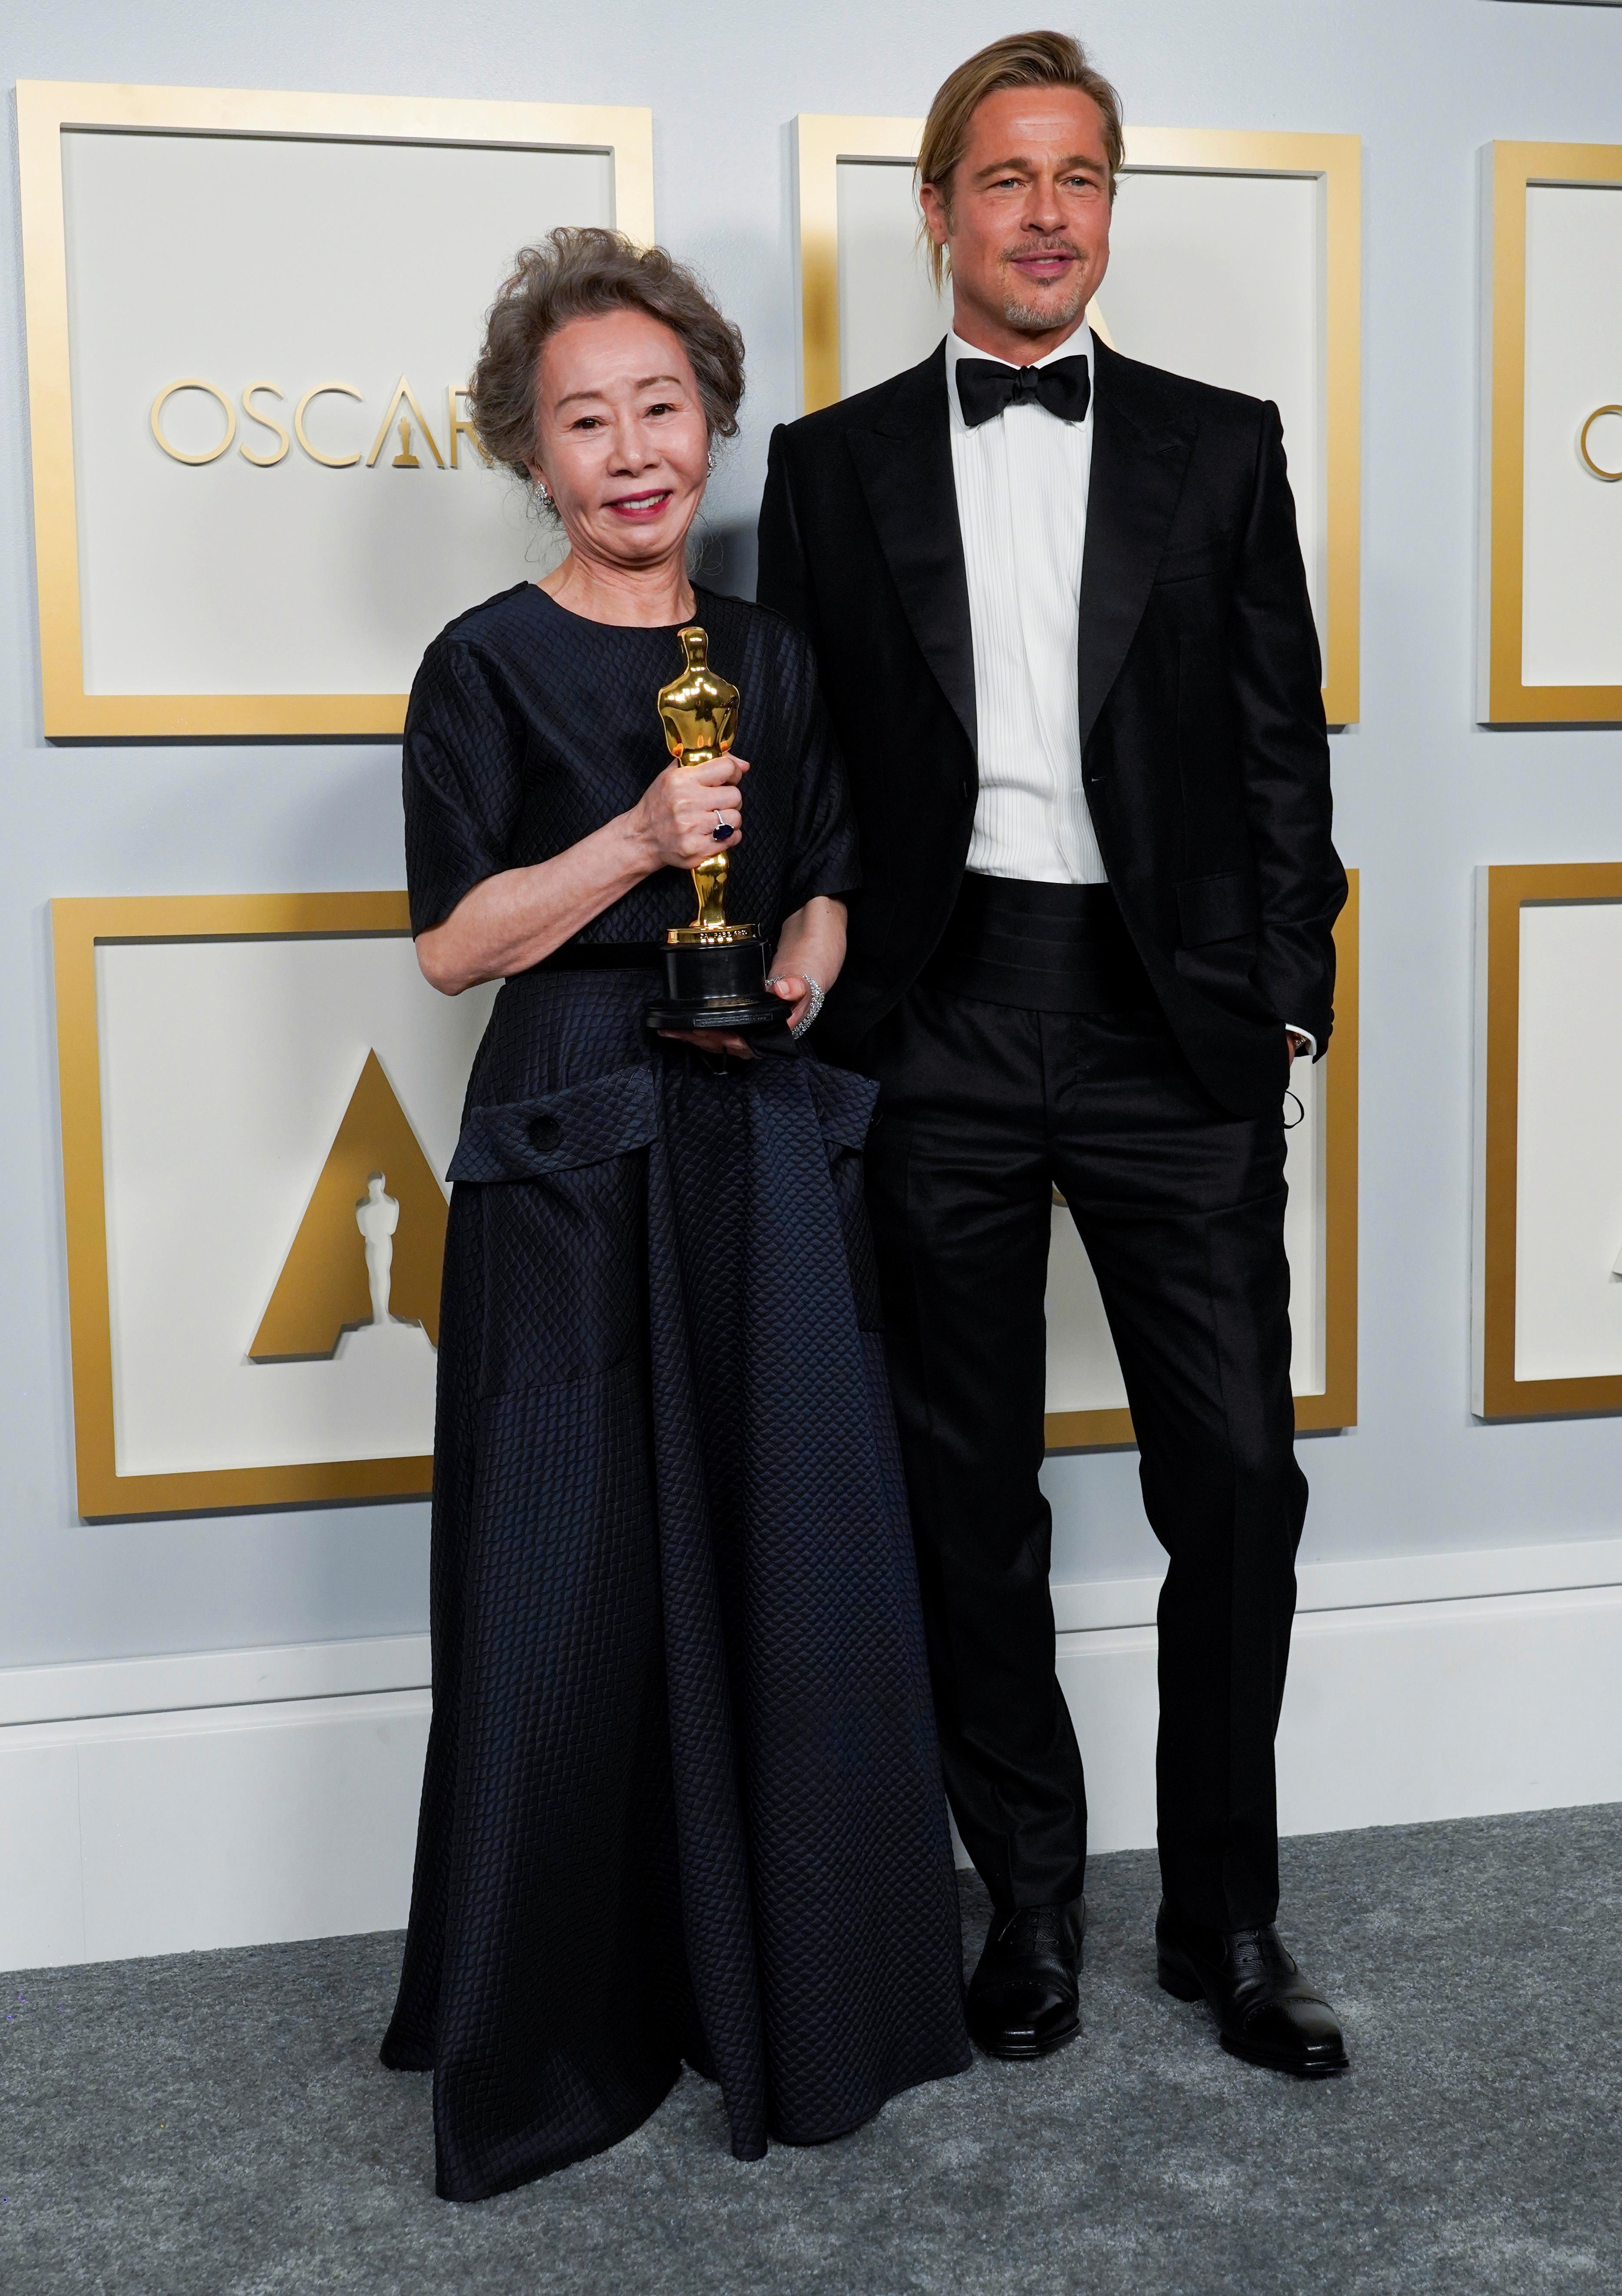 PRESENTERTE PRIS: På Oscar-utdelingen i 2021 delte han selv ut en pris. Her med prisvinner Yuh-Jung Youn. Håret var blitt lenger, og satt bakover i en hestehale. 